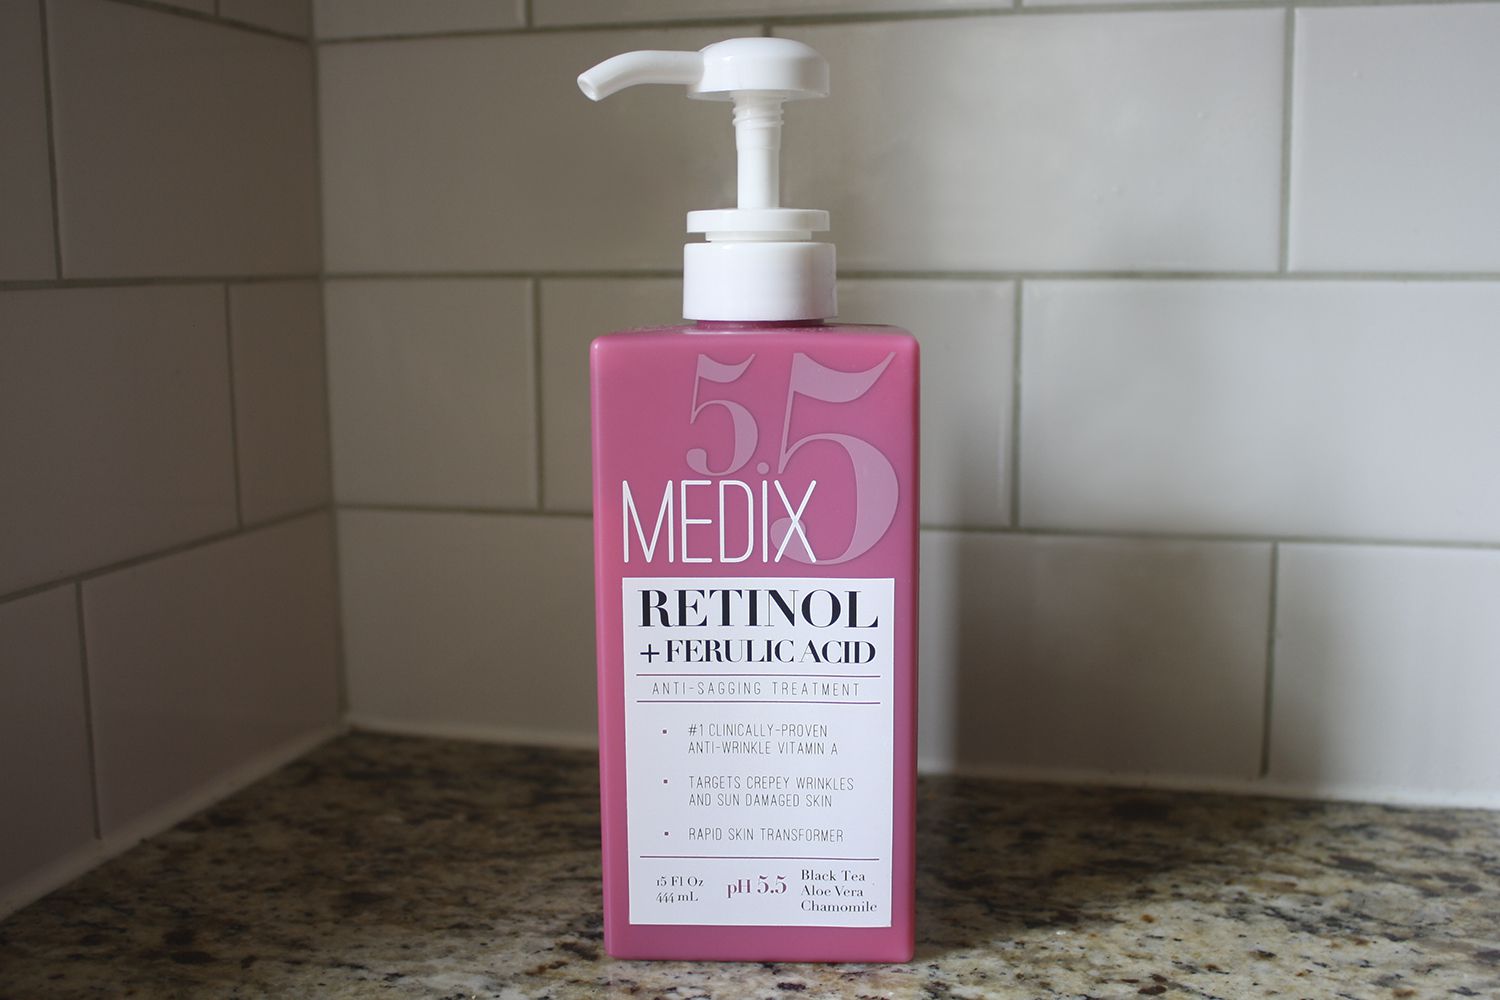 Medix 5. 5 retinol + ácido ferúlico contra a pele flácida